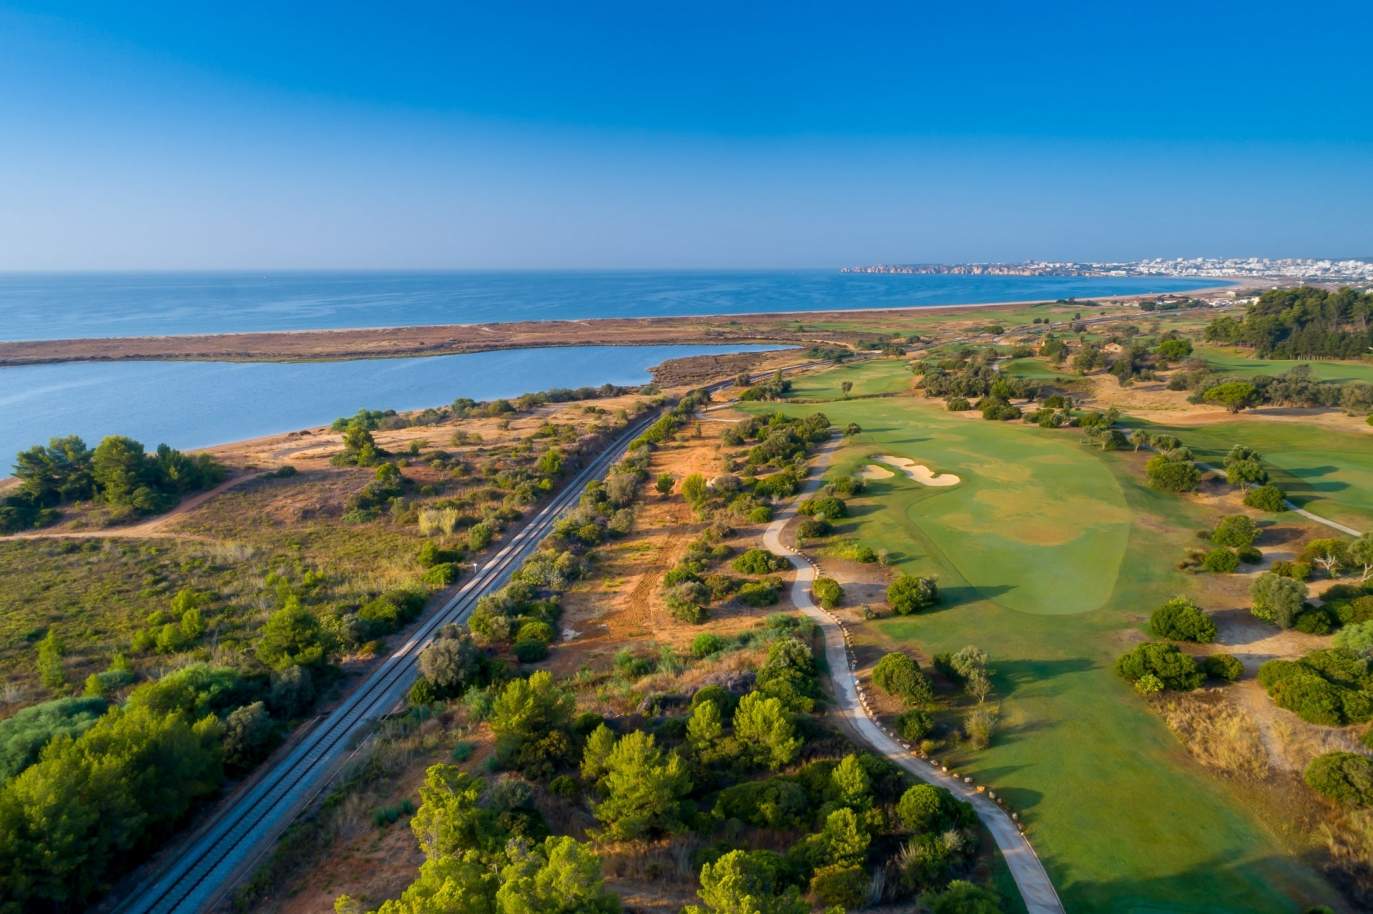 Terrain à vendre dans un complexe de golf, Lagos, Algarve, Portugal_123004